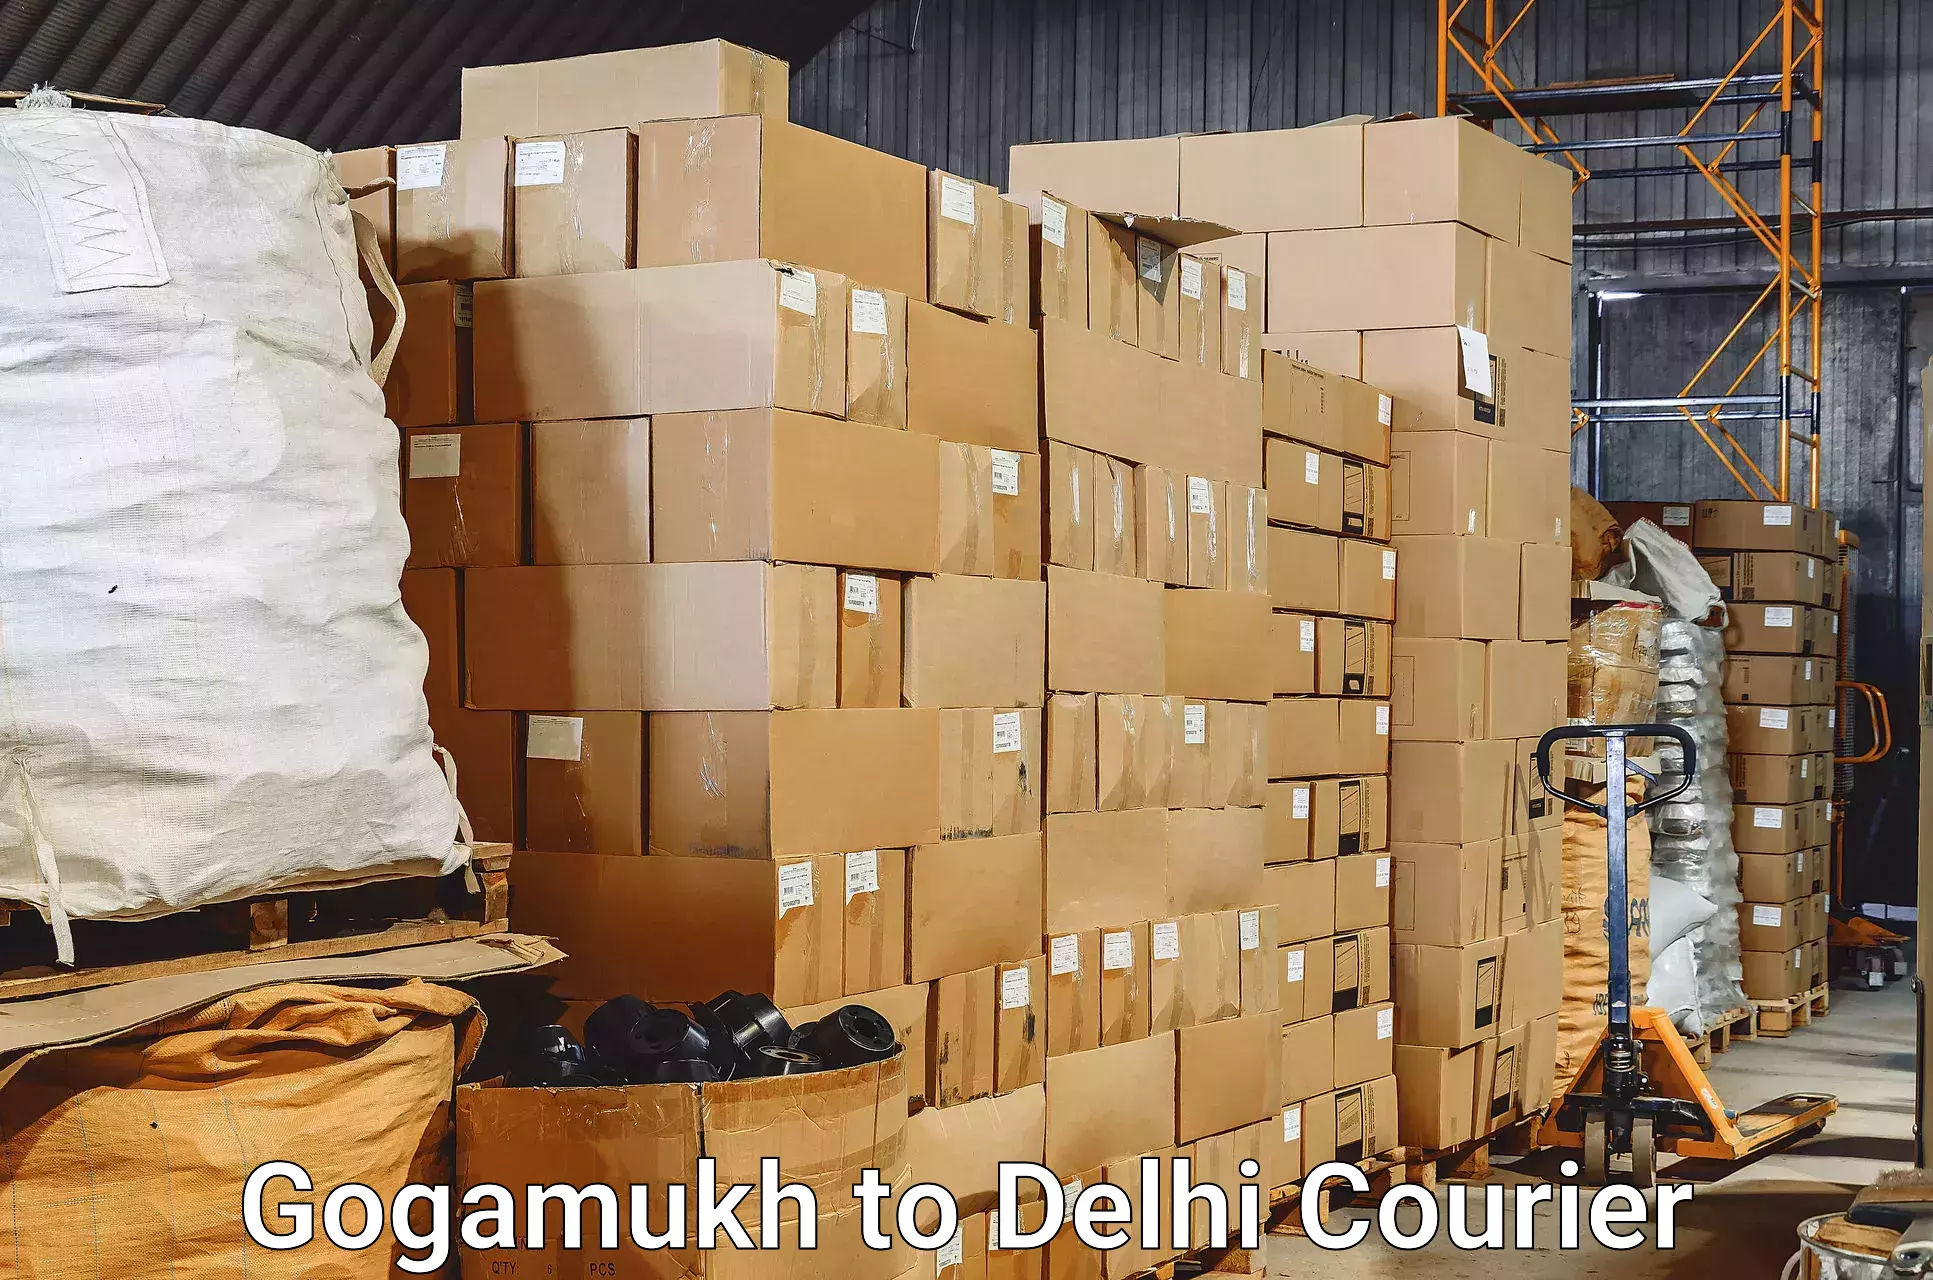 Unaccompanied luggage service Gogamukh to University of Delhi